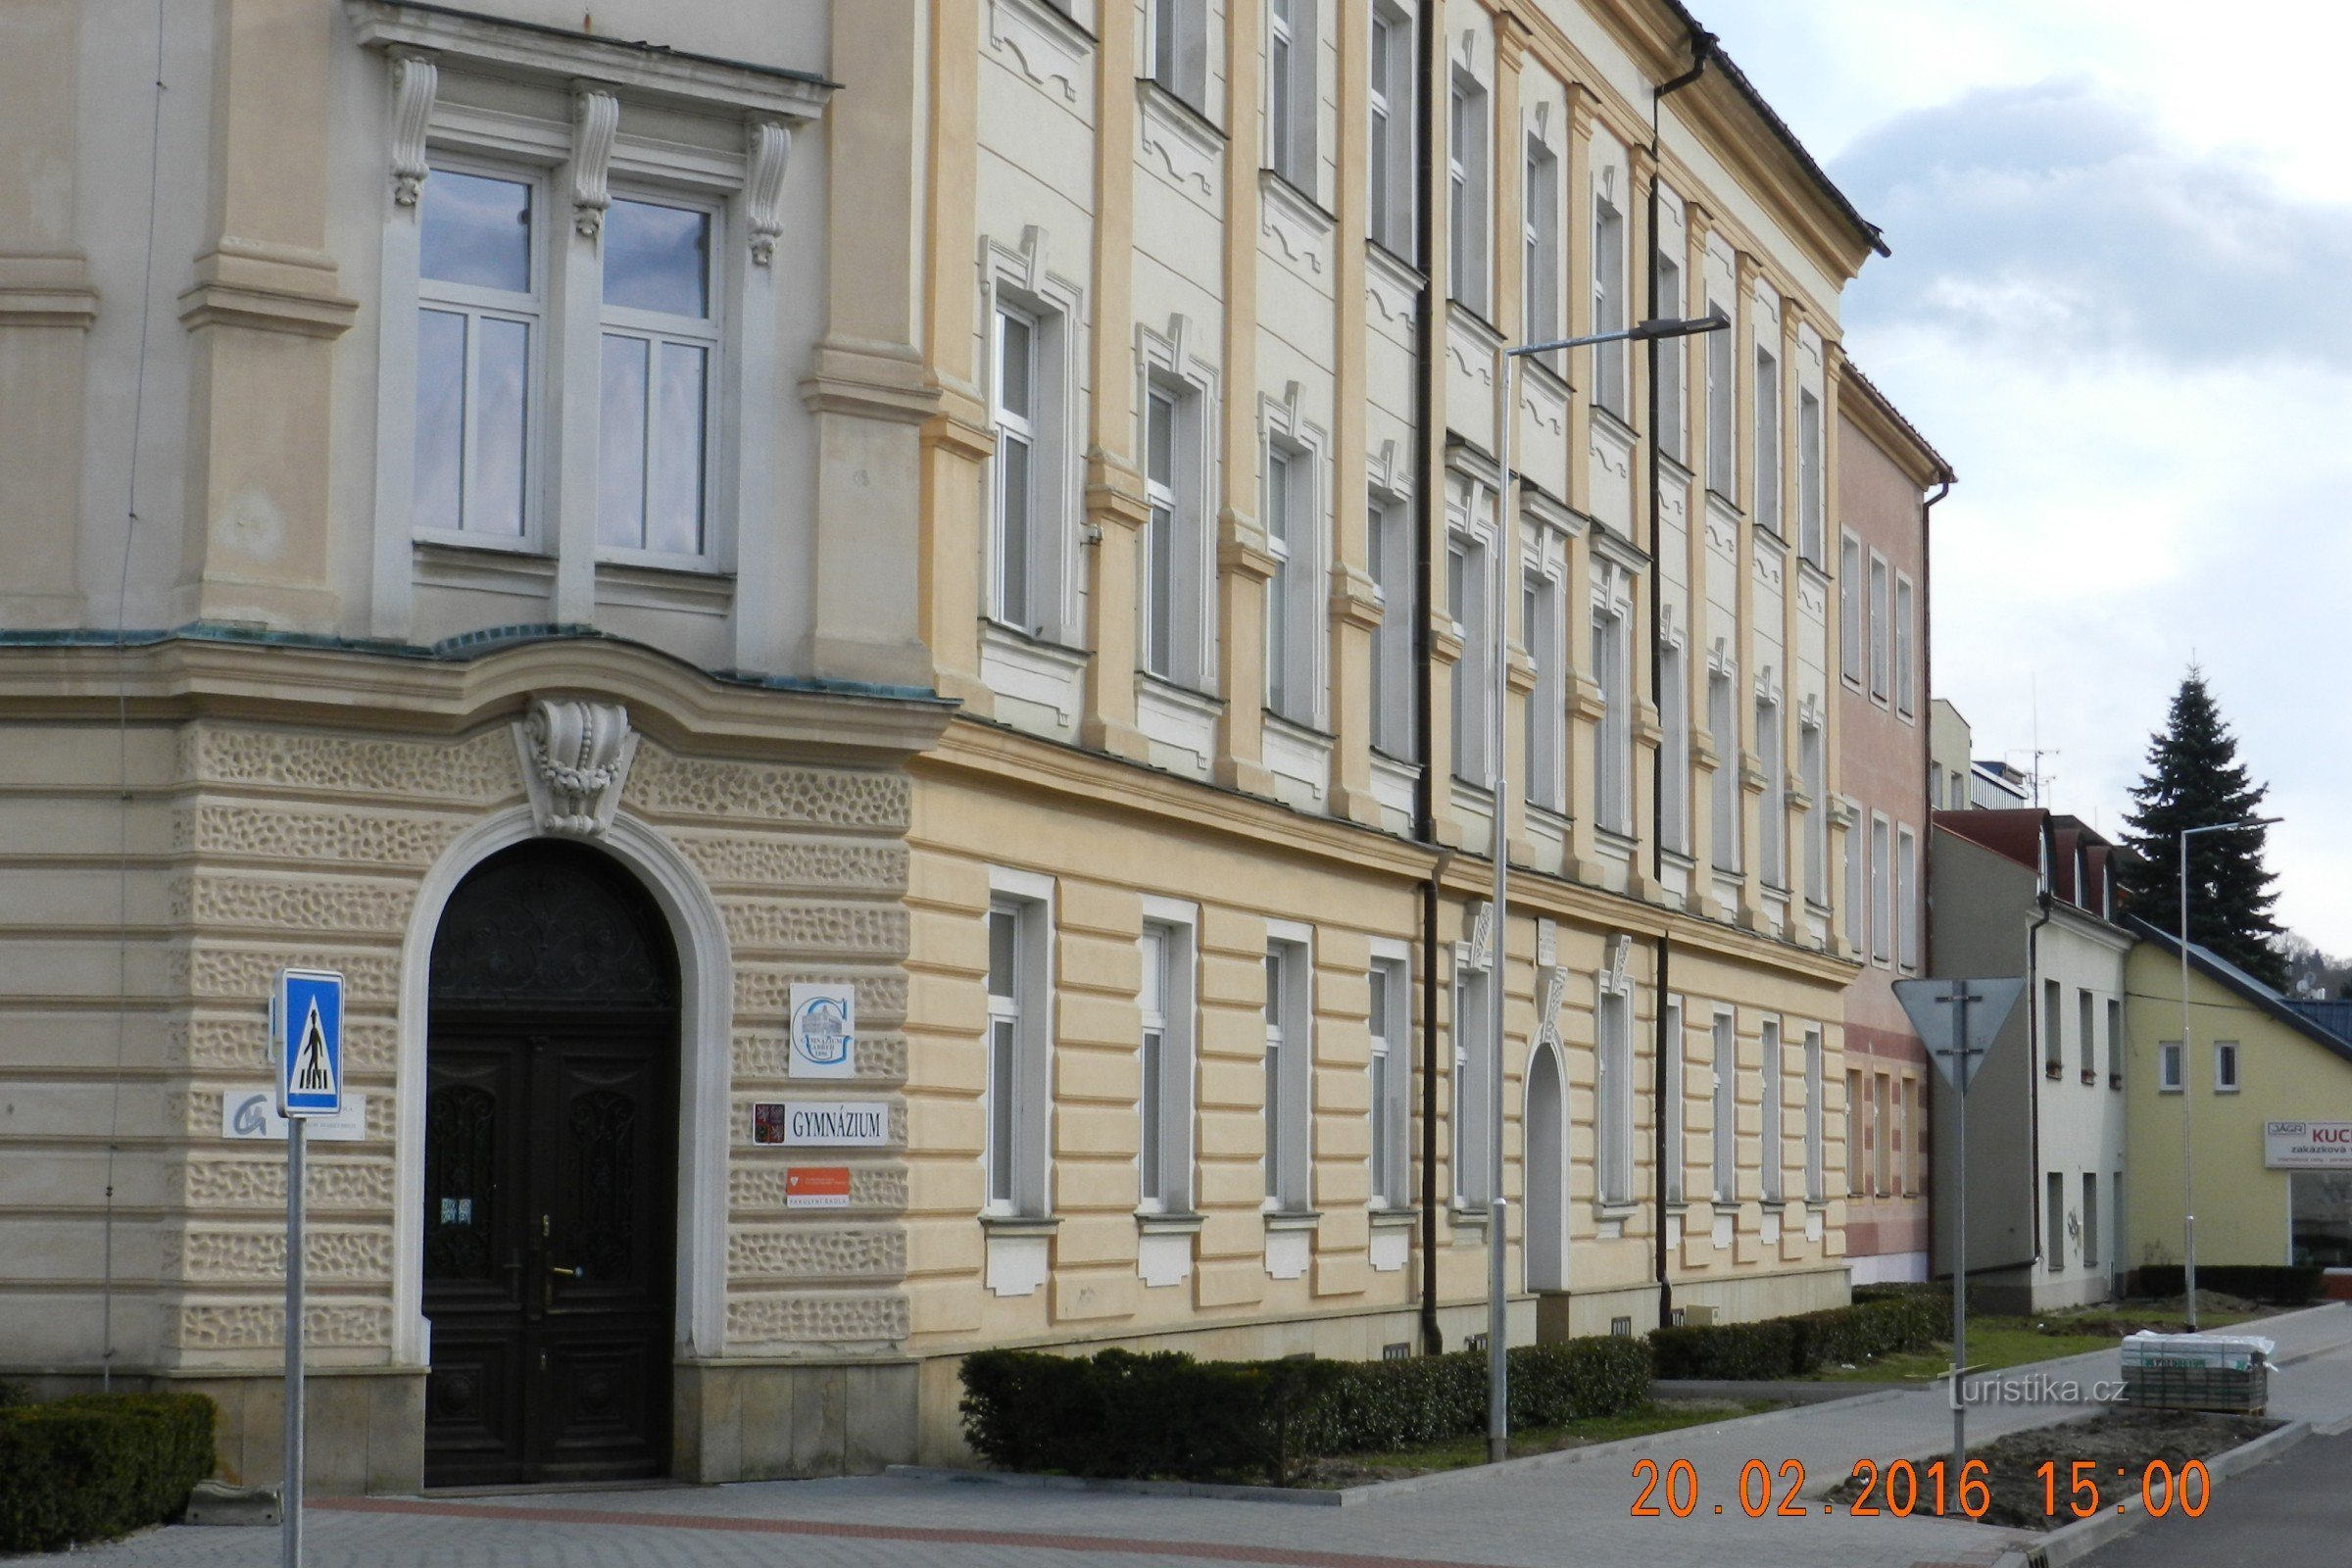 Zábřeh - edificio de gimnasio - la primera y más antigua escuela secundaria en el noroeste de Moravia